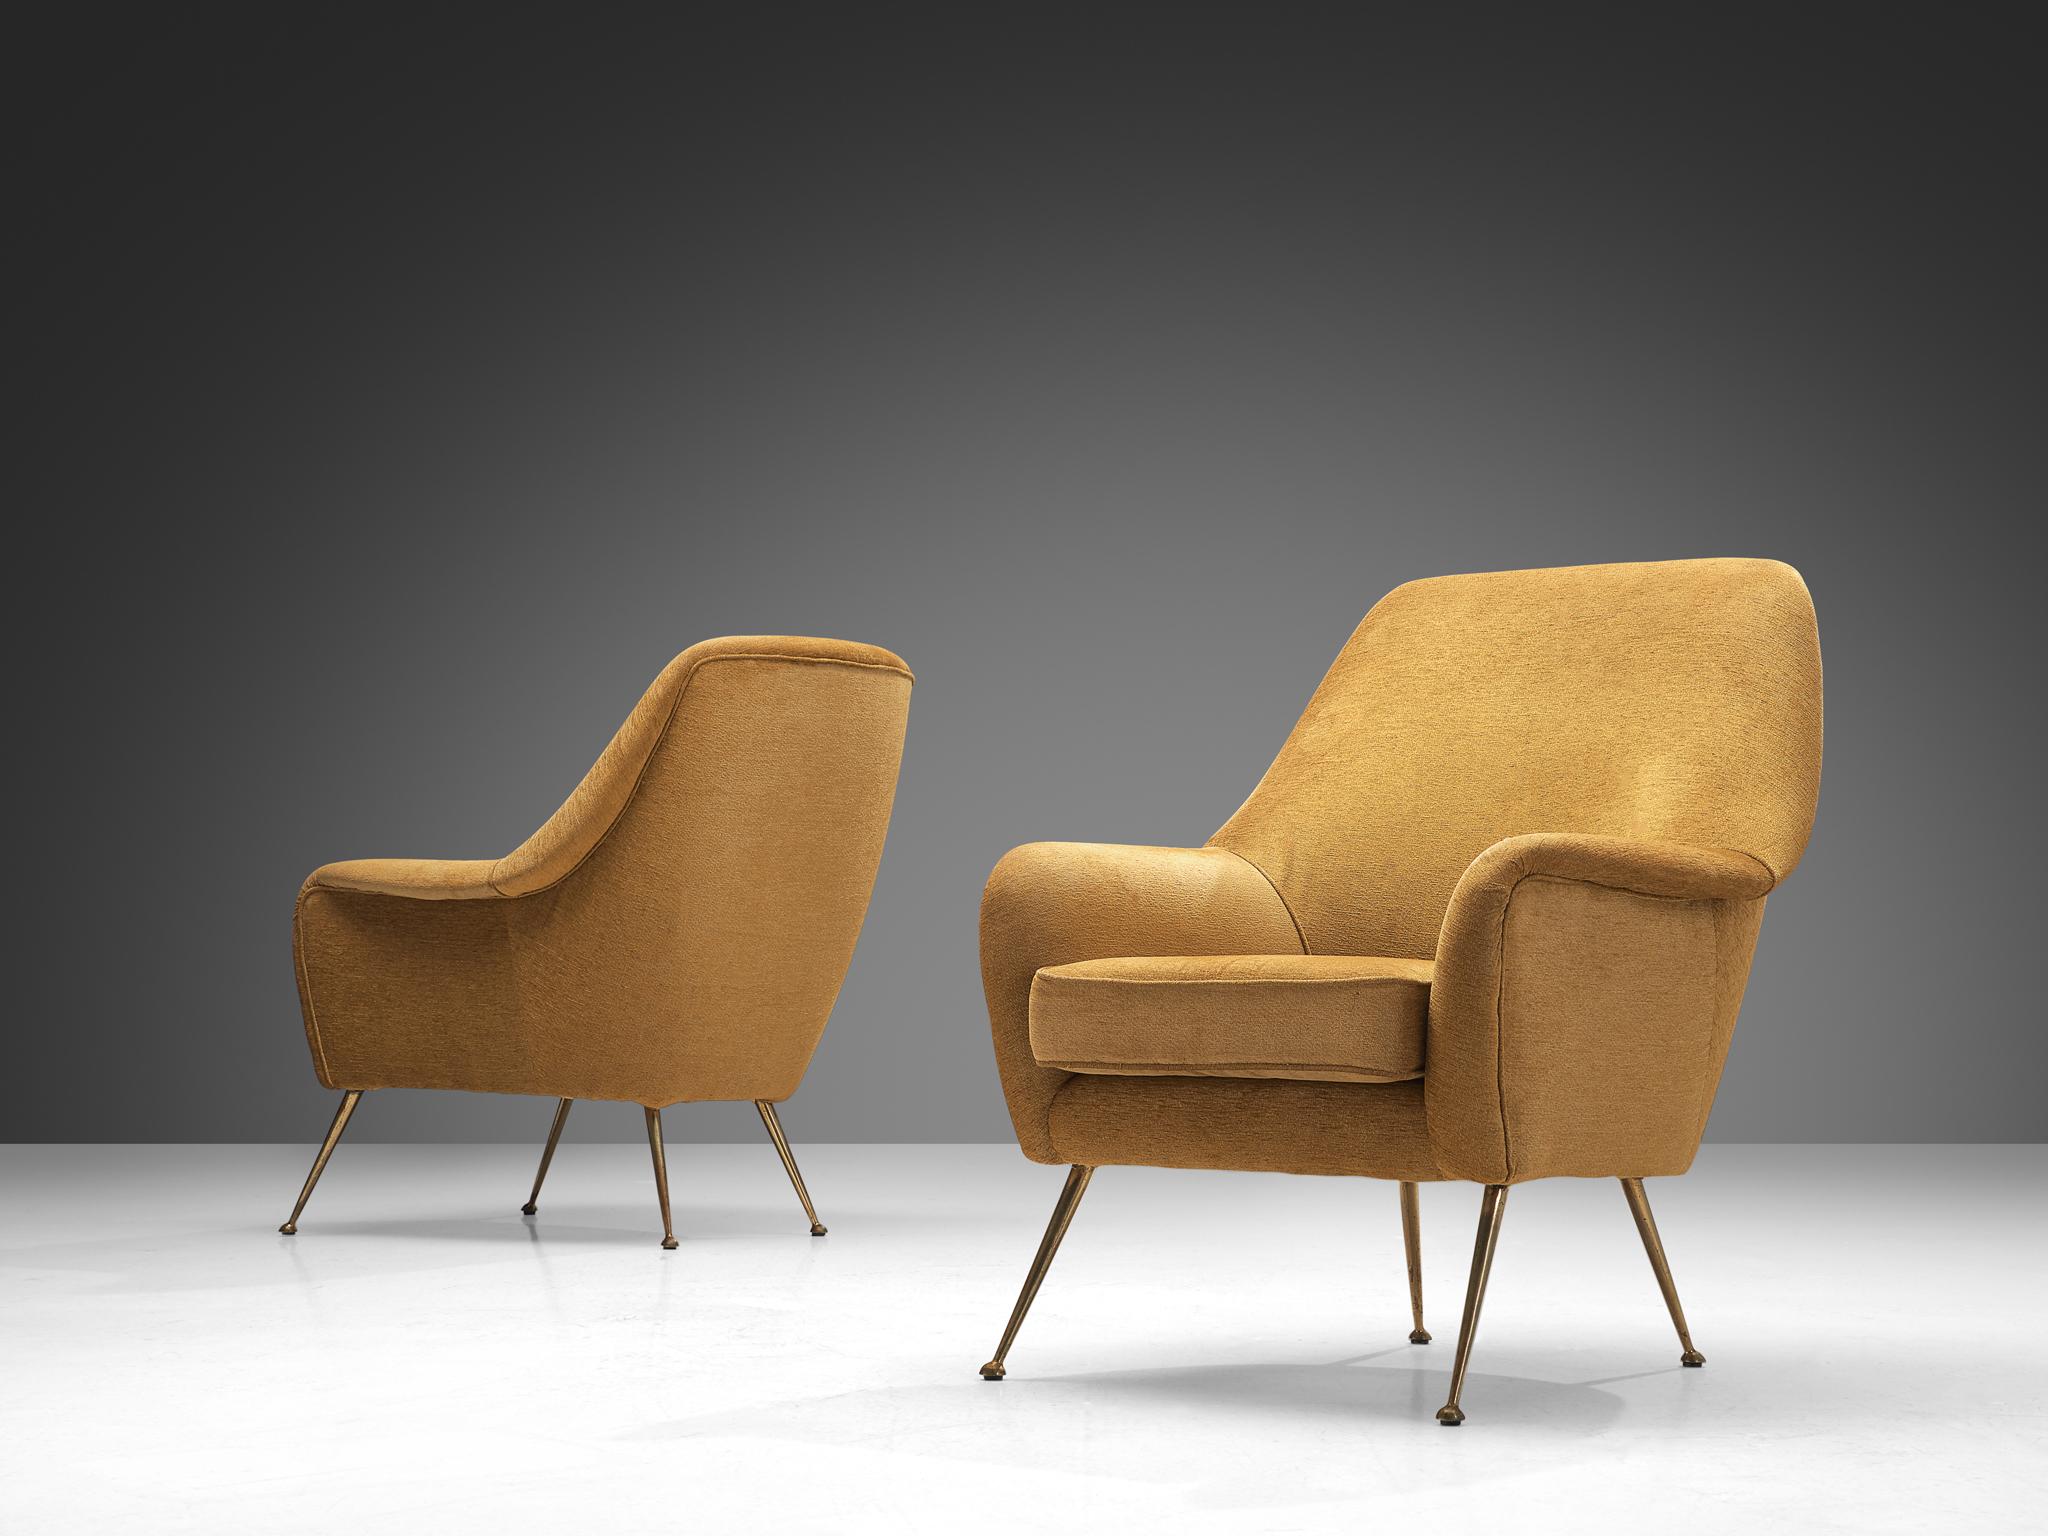 Paar Loungesessel, Stoff, Messing, Italien, 1950er Jahre.

Dieser italienische Sessel zeichnet sich durch eine elegante Ästhetik aus, die sich aus den geschwungenen Linien und den runden Kanten ergibt. Die Sitzfläche wird von schlanken, nach außen